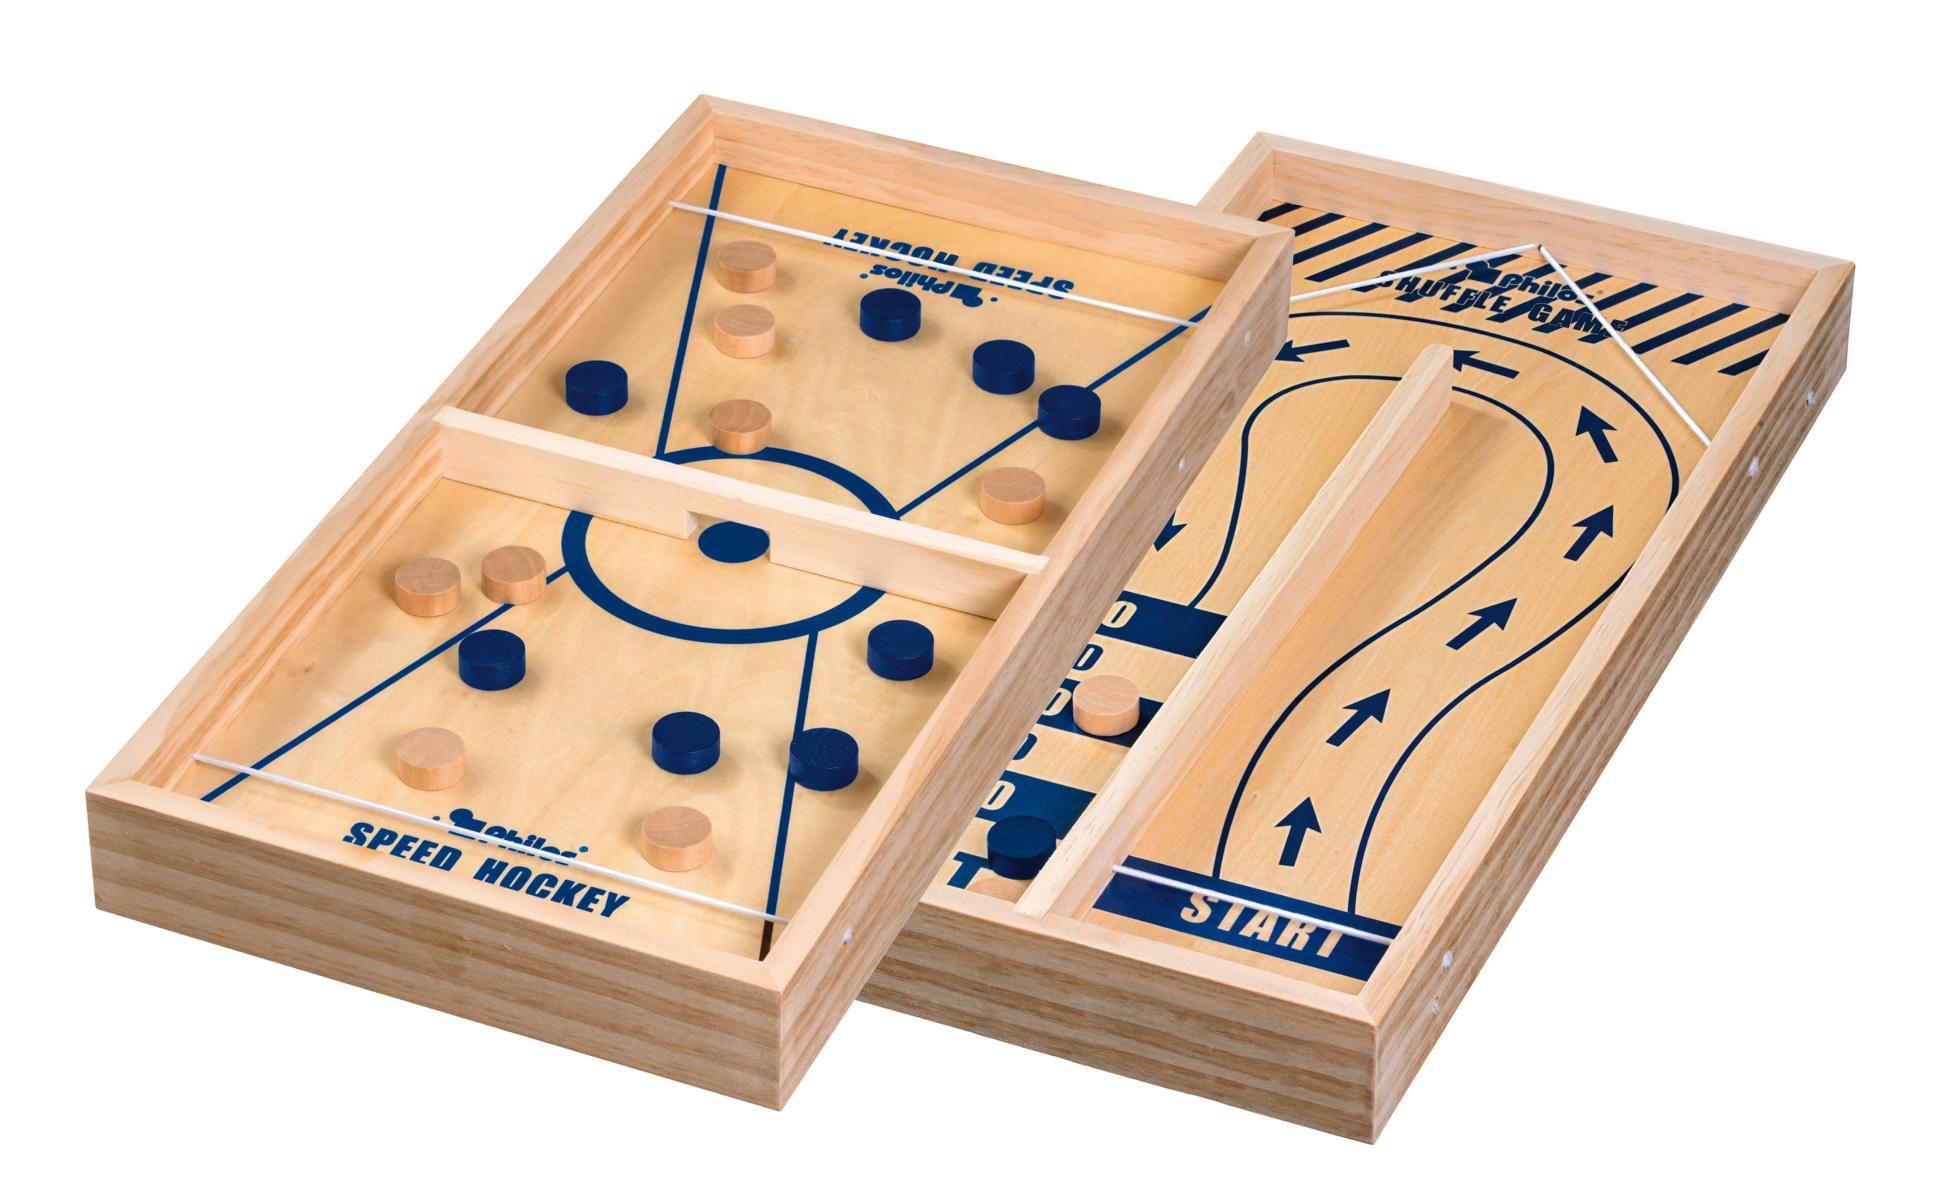 Shuffle Game & Speed Hockey, Tischspiel